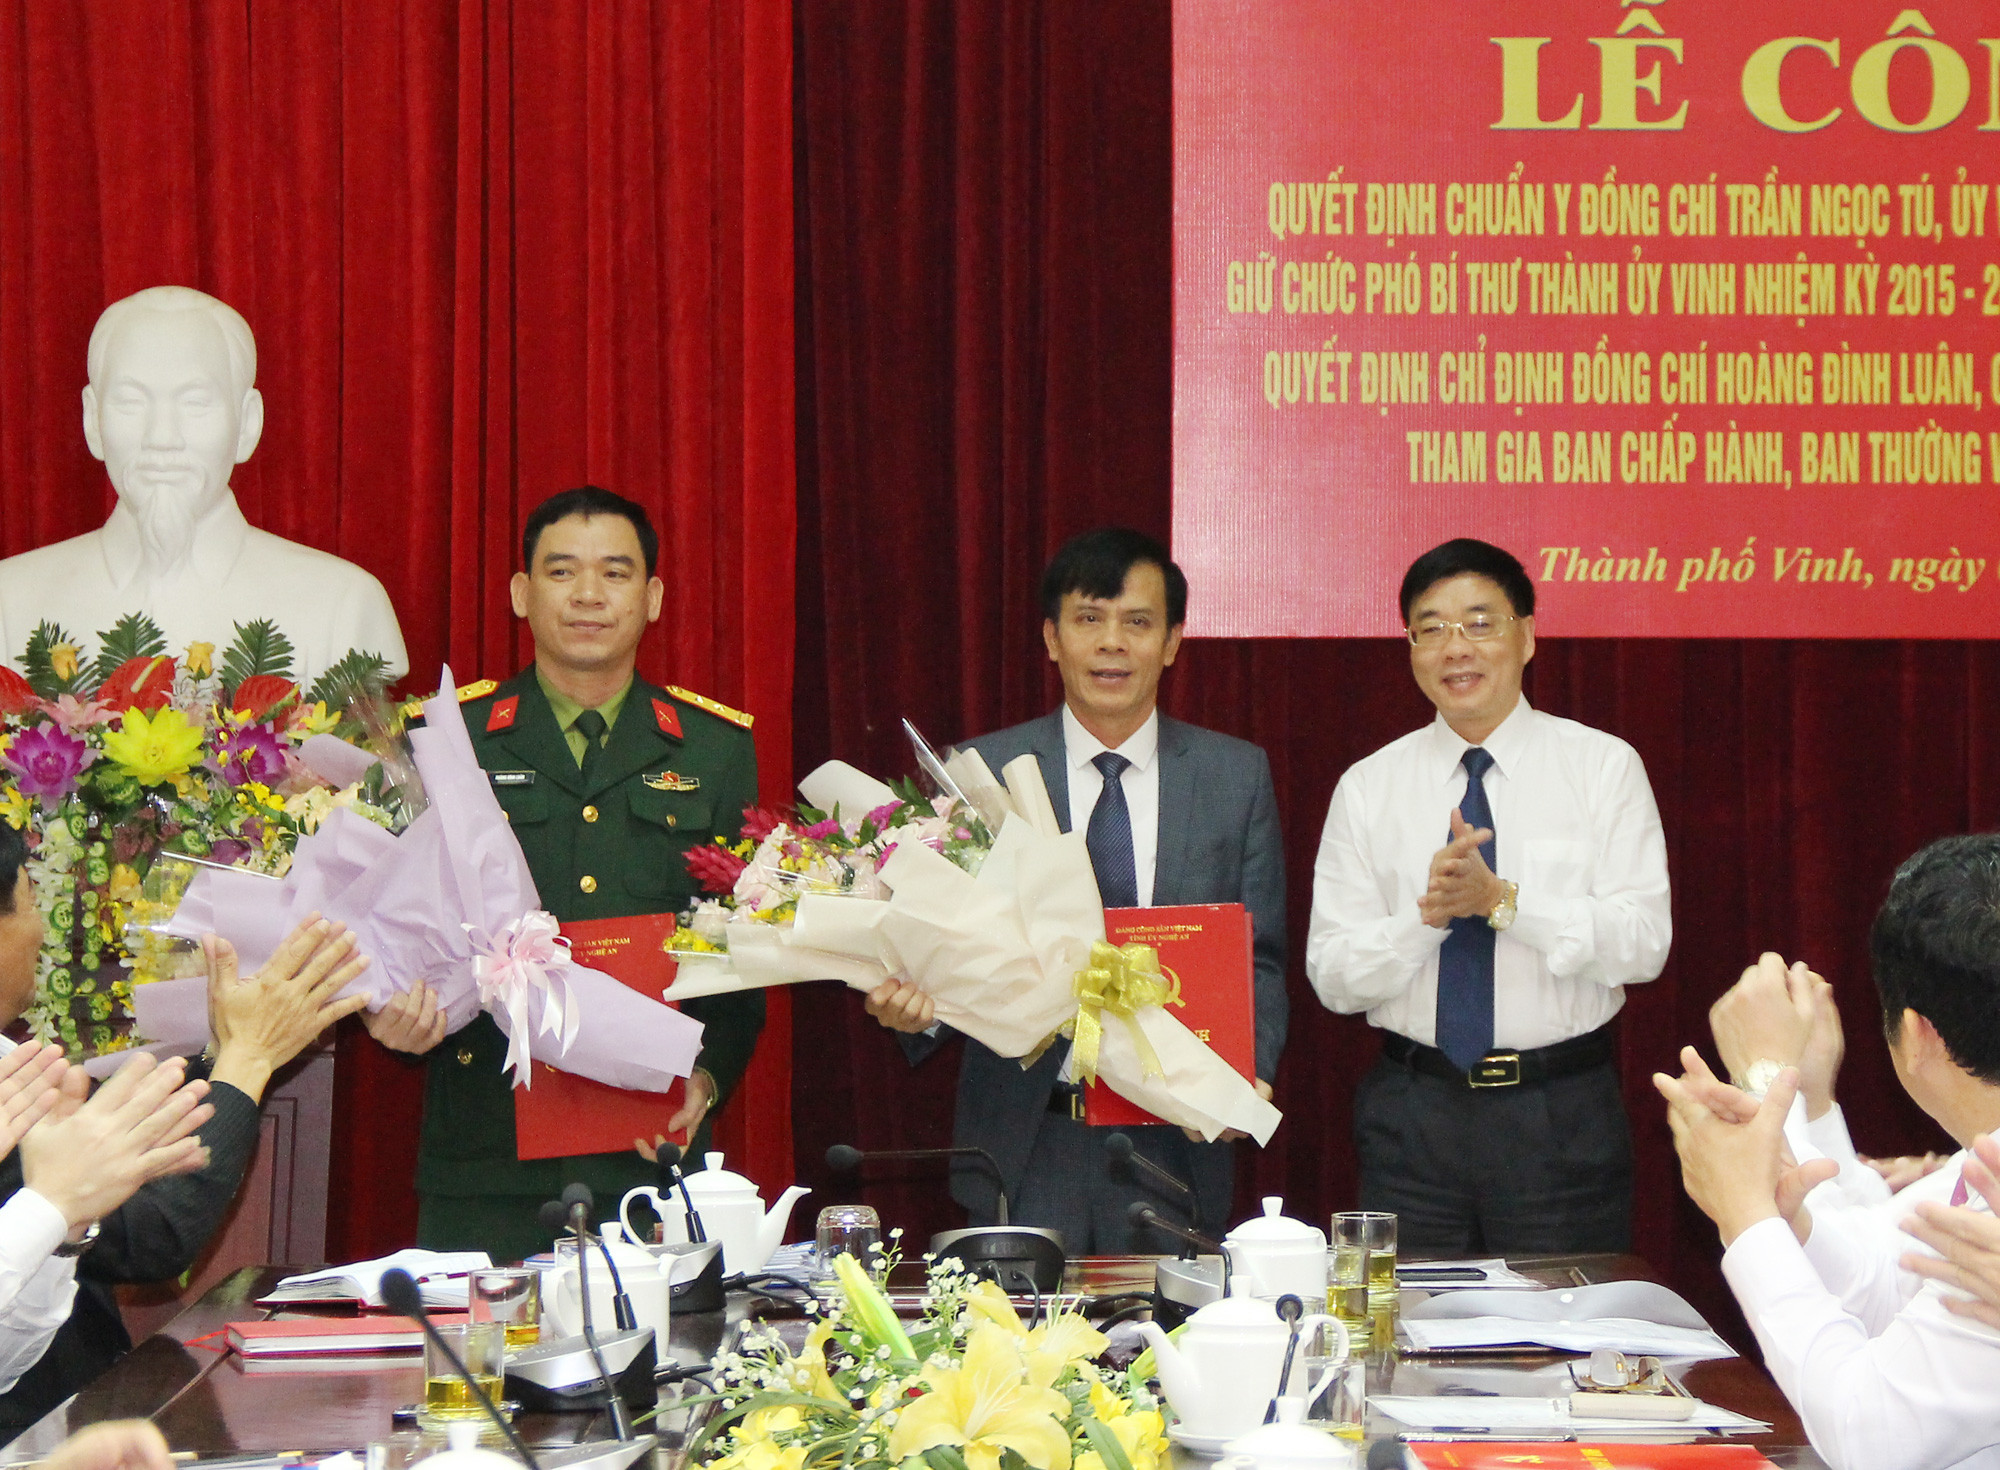 Đồng chí Nguyễn Văn Thông - Phó Bí thư Tỉnh ủy trao quyết định chuẩn y và